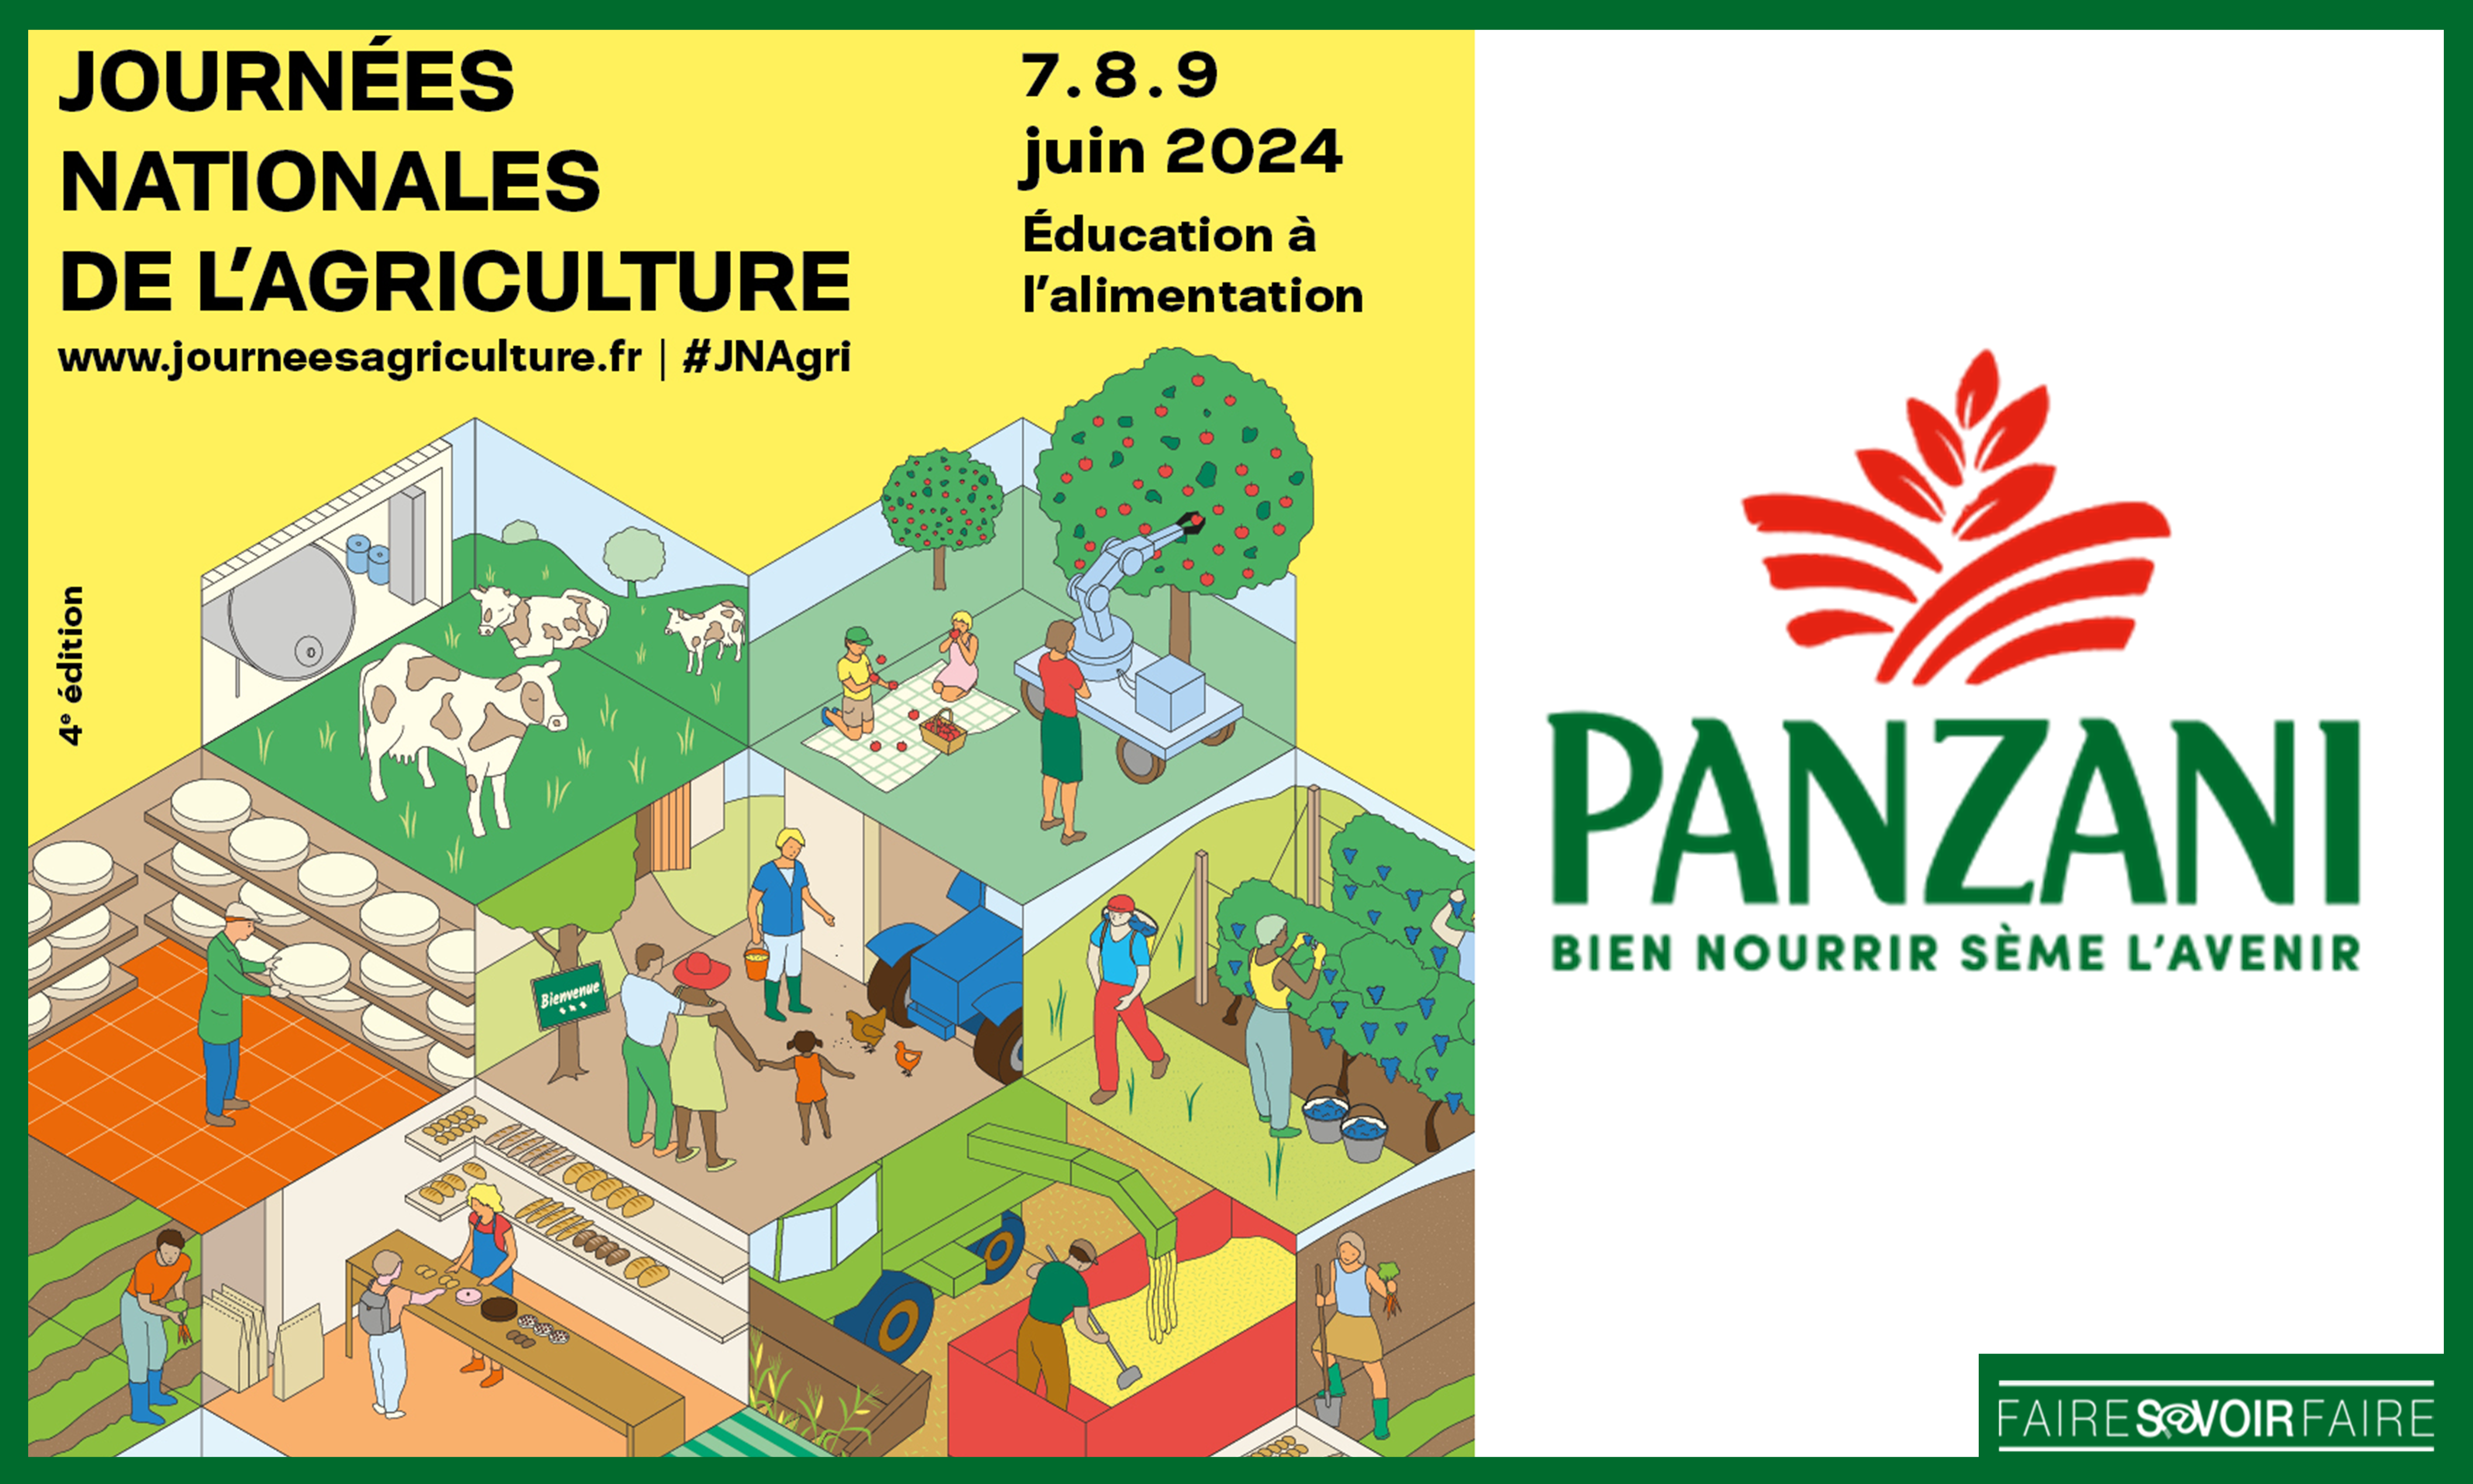 Engagée à utiliser du blé français, Panzani sera mécène des Journées Nationales de l’Agriculture, du 7 au 9 juin 2024